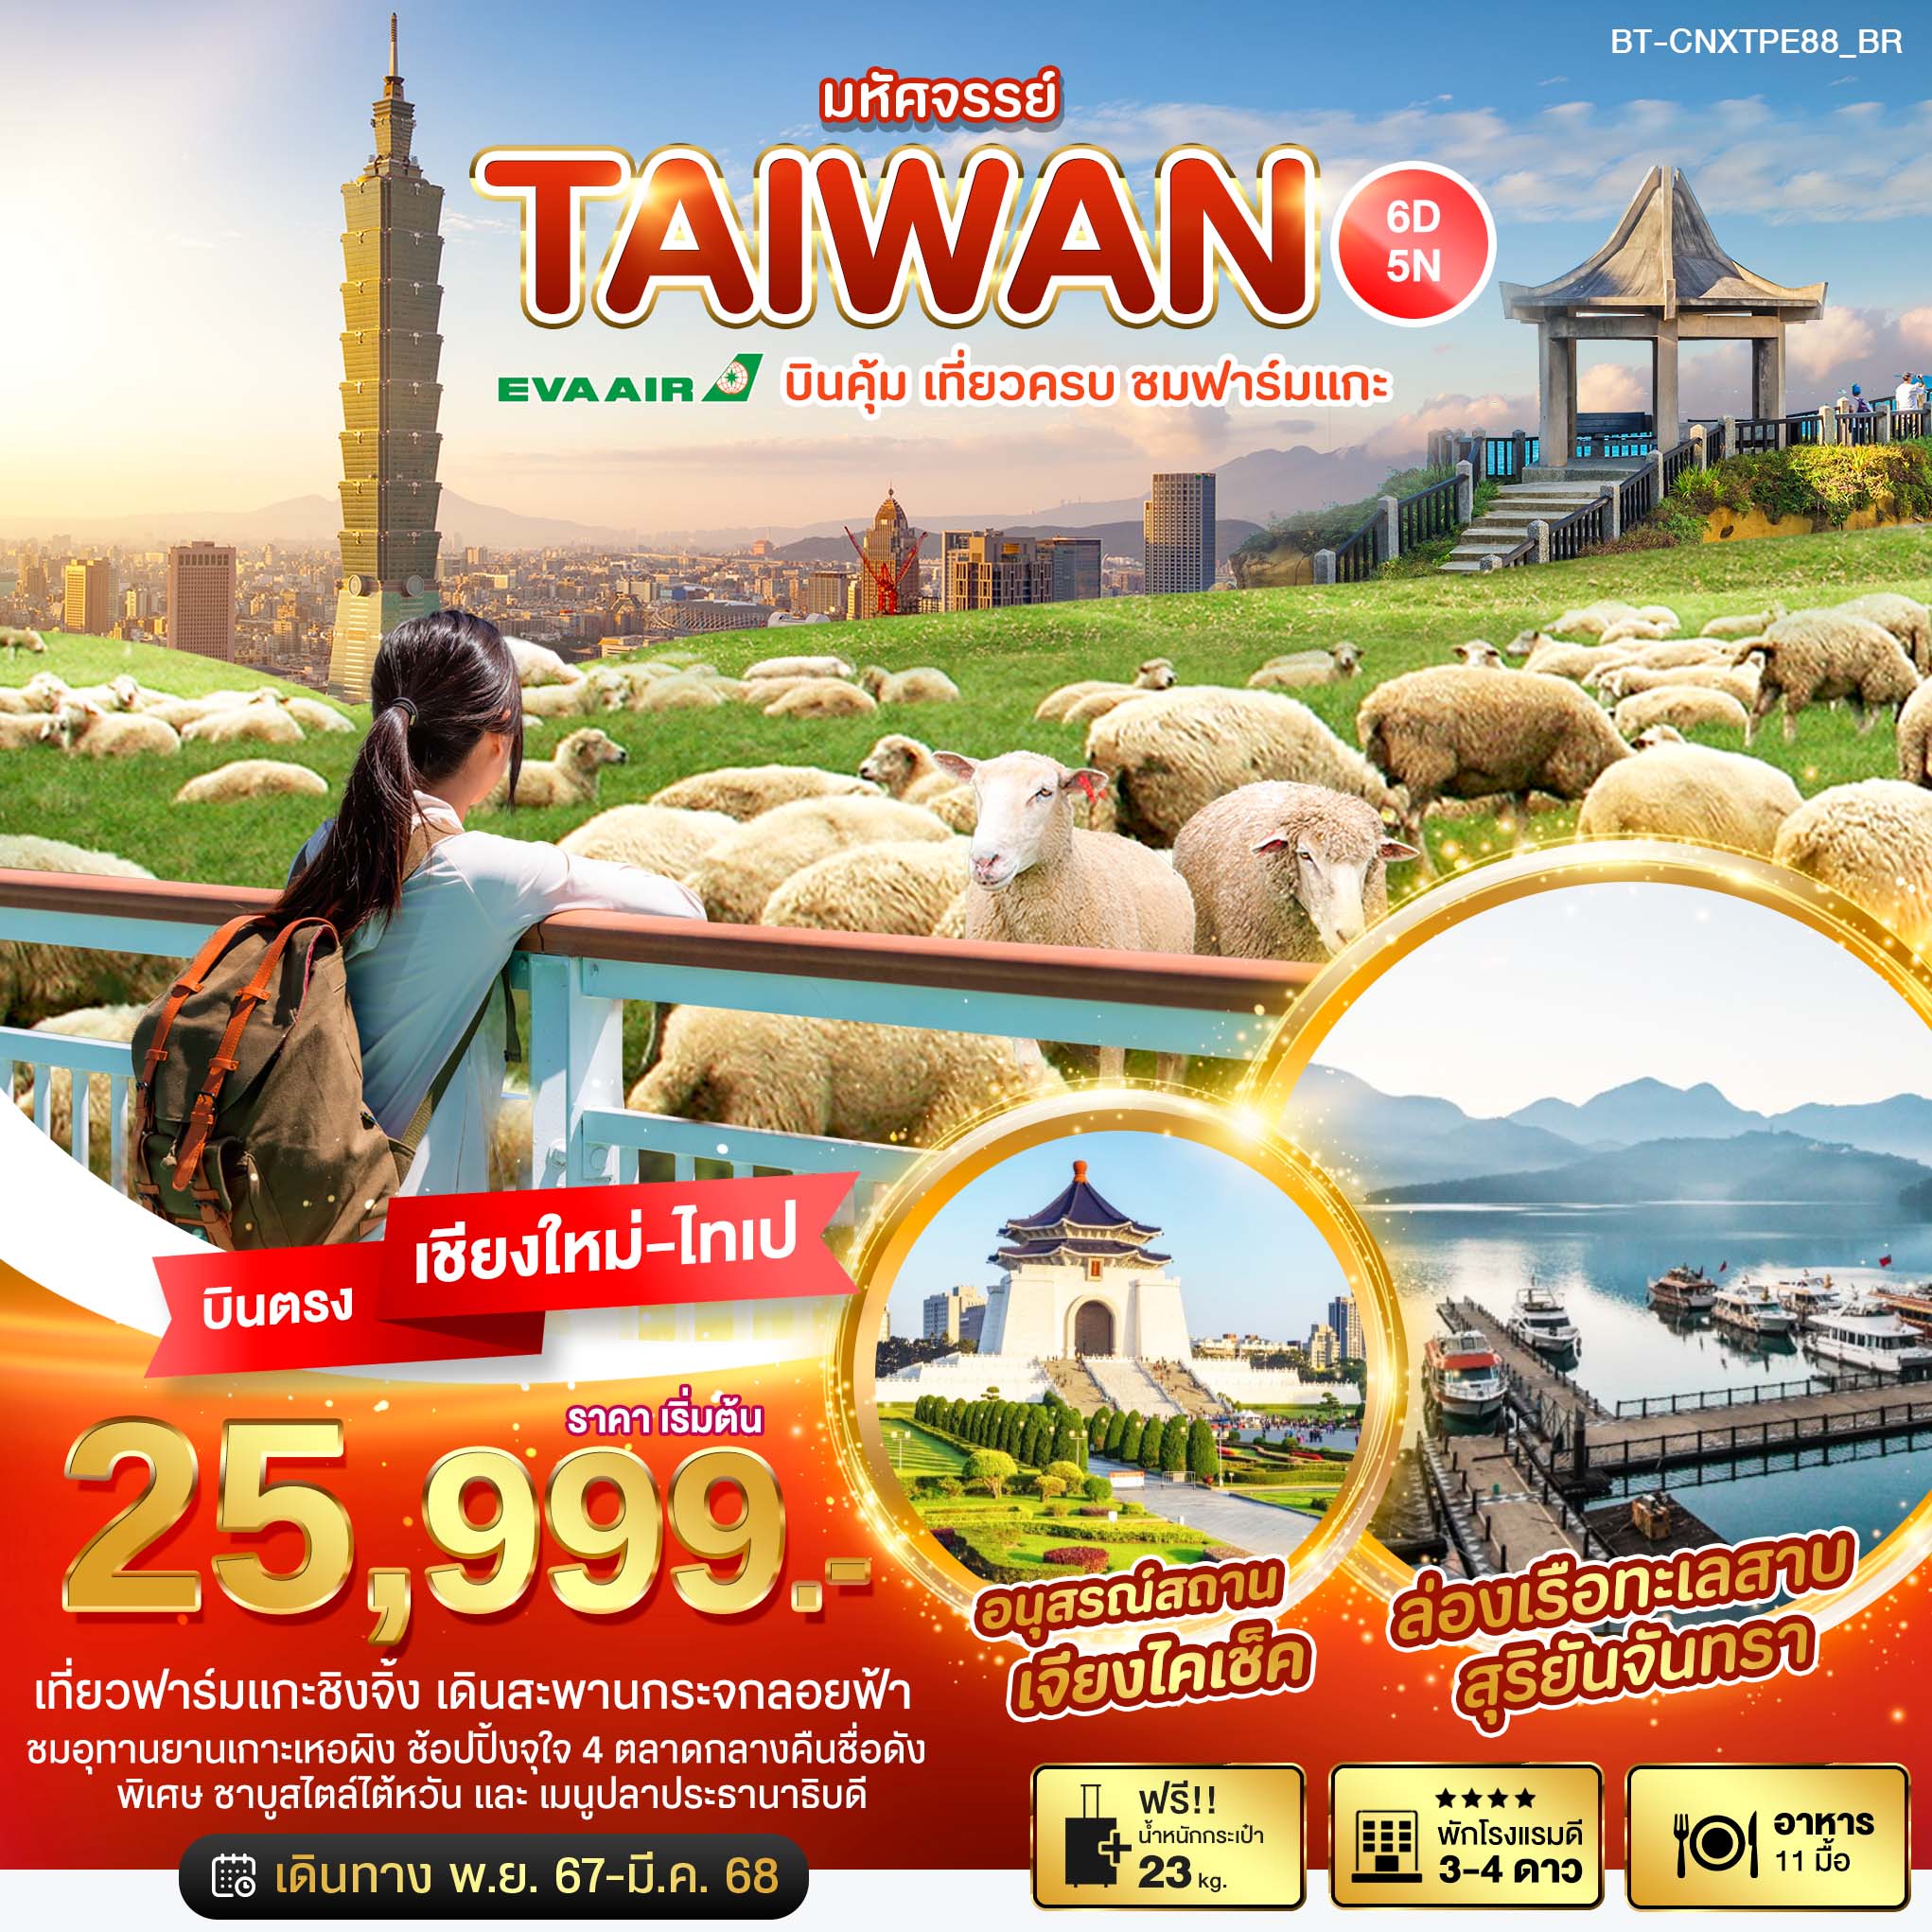 ทัวร์ไต้หวัน มหัศจรรย์ TAIWAN บินคุ้ม เที่ยวครบ ชมฟาร์มแกะ 6วัน 5คืน (BR)